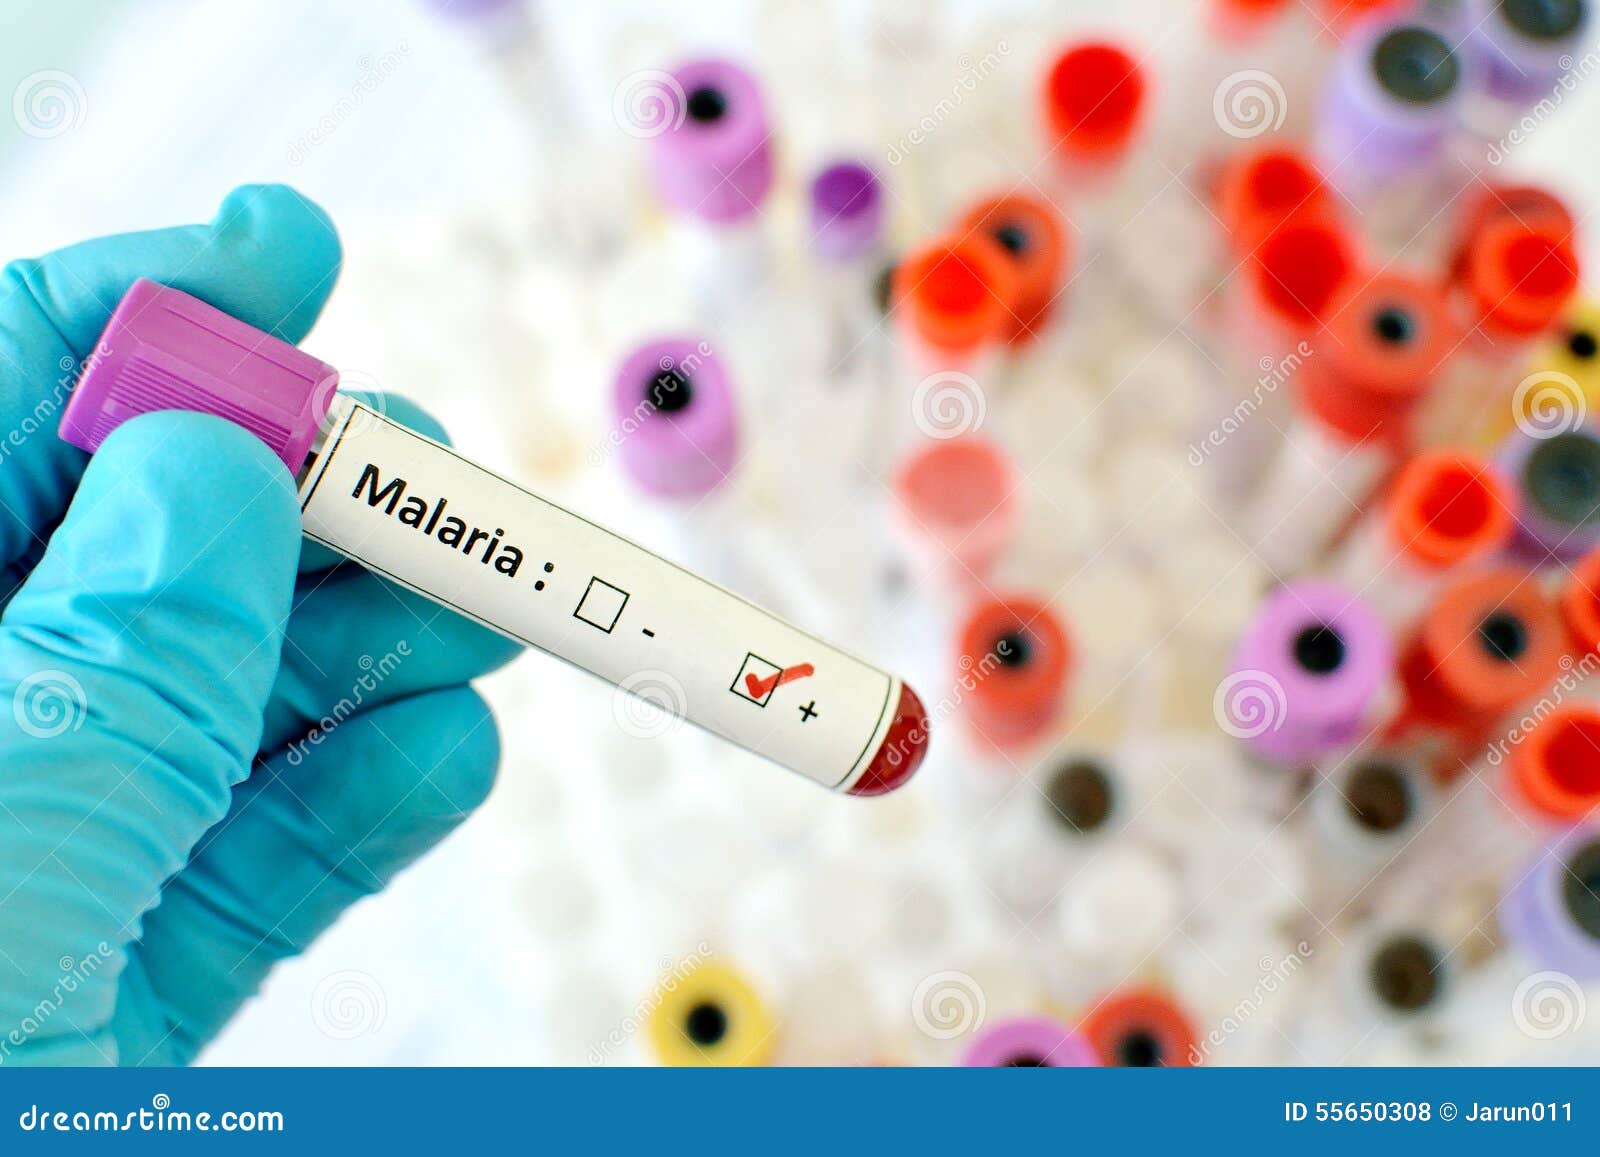 Для диагностики малярии забор крови осуществляют. Вакцина от малярии. Лабораторная диагностика малярии. Вакцина от малярии в Москве.